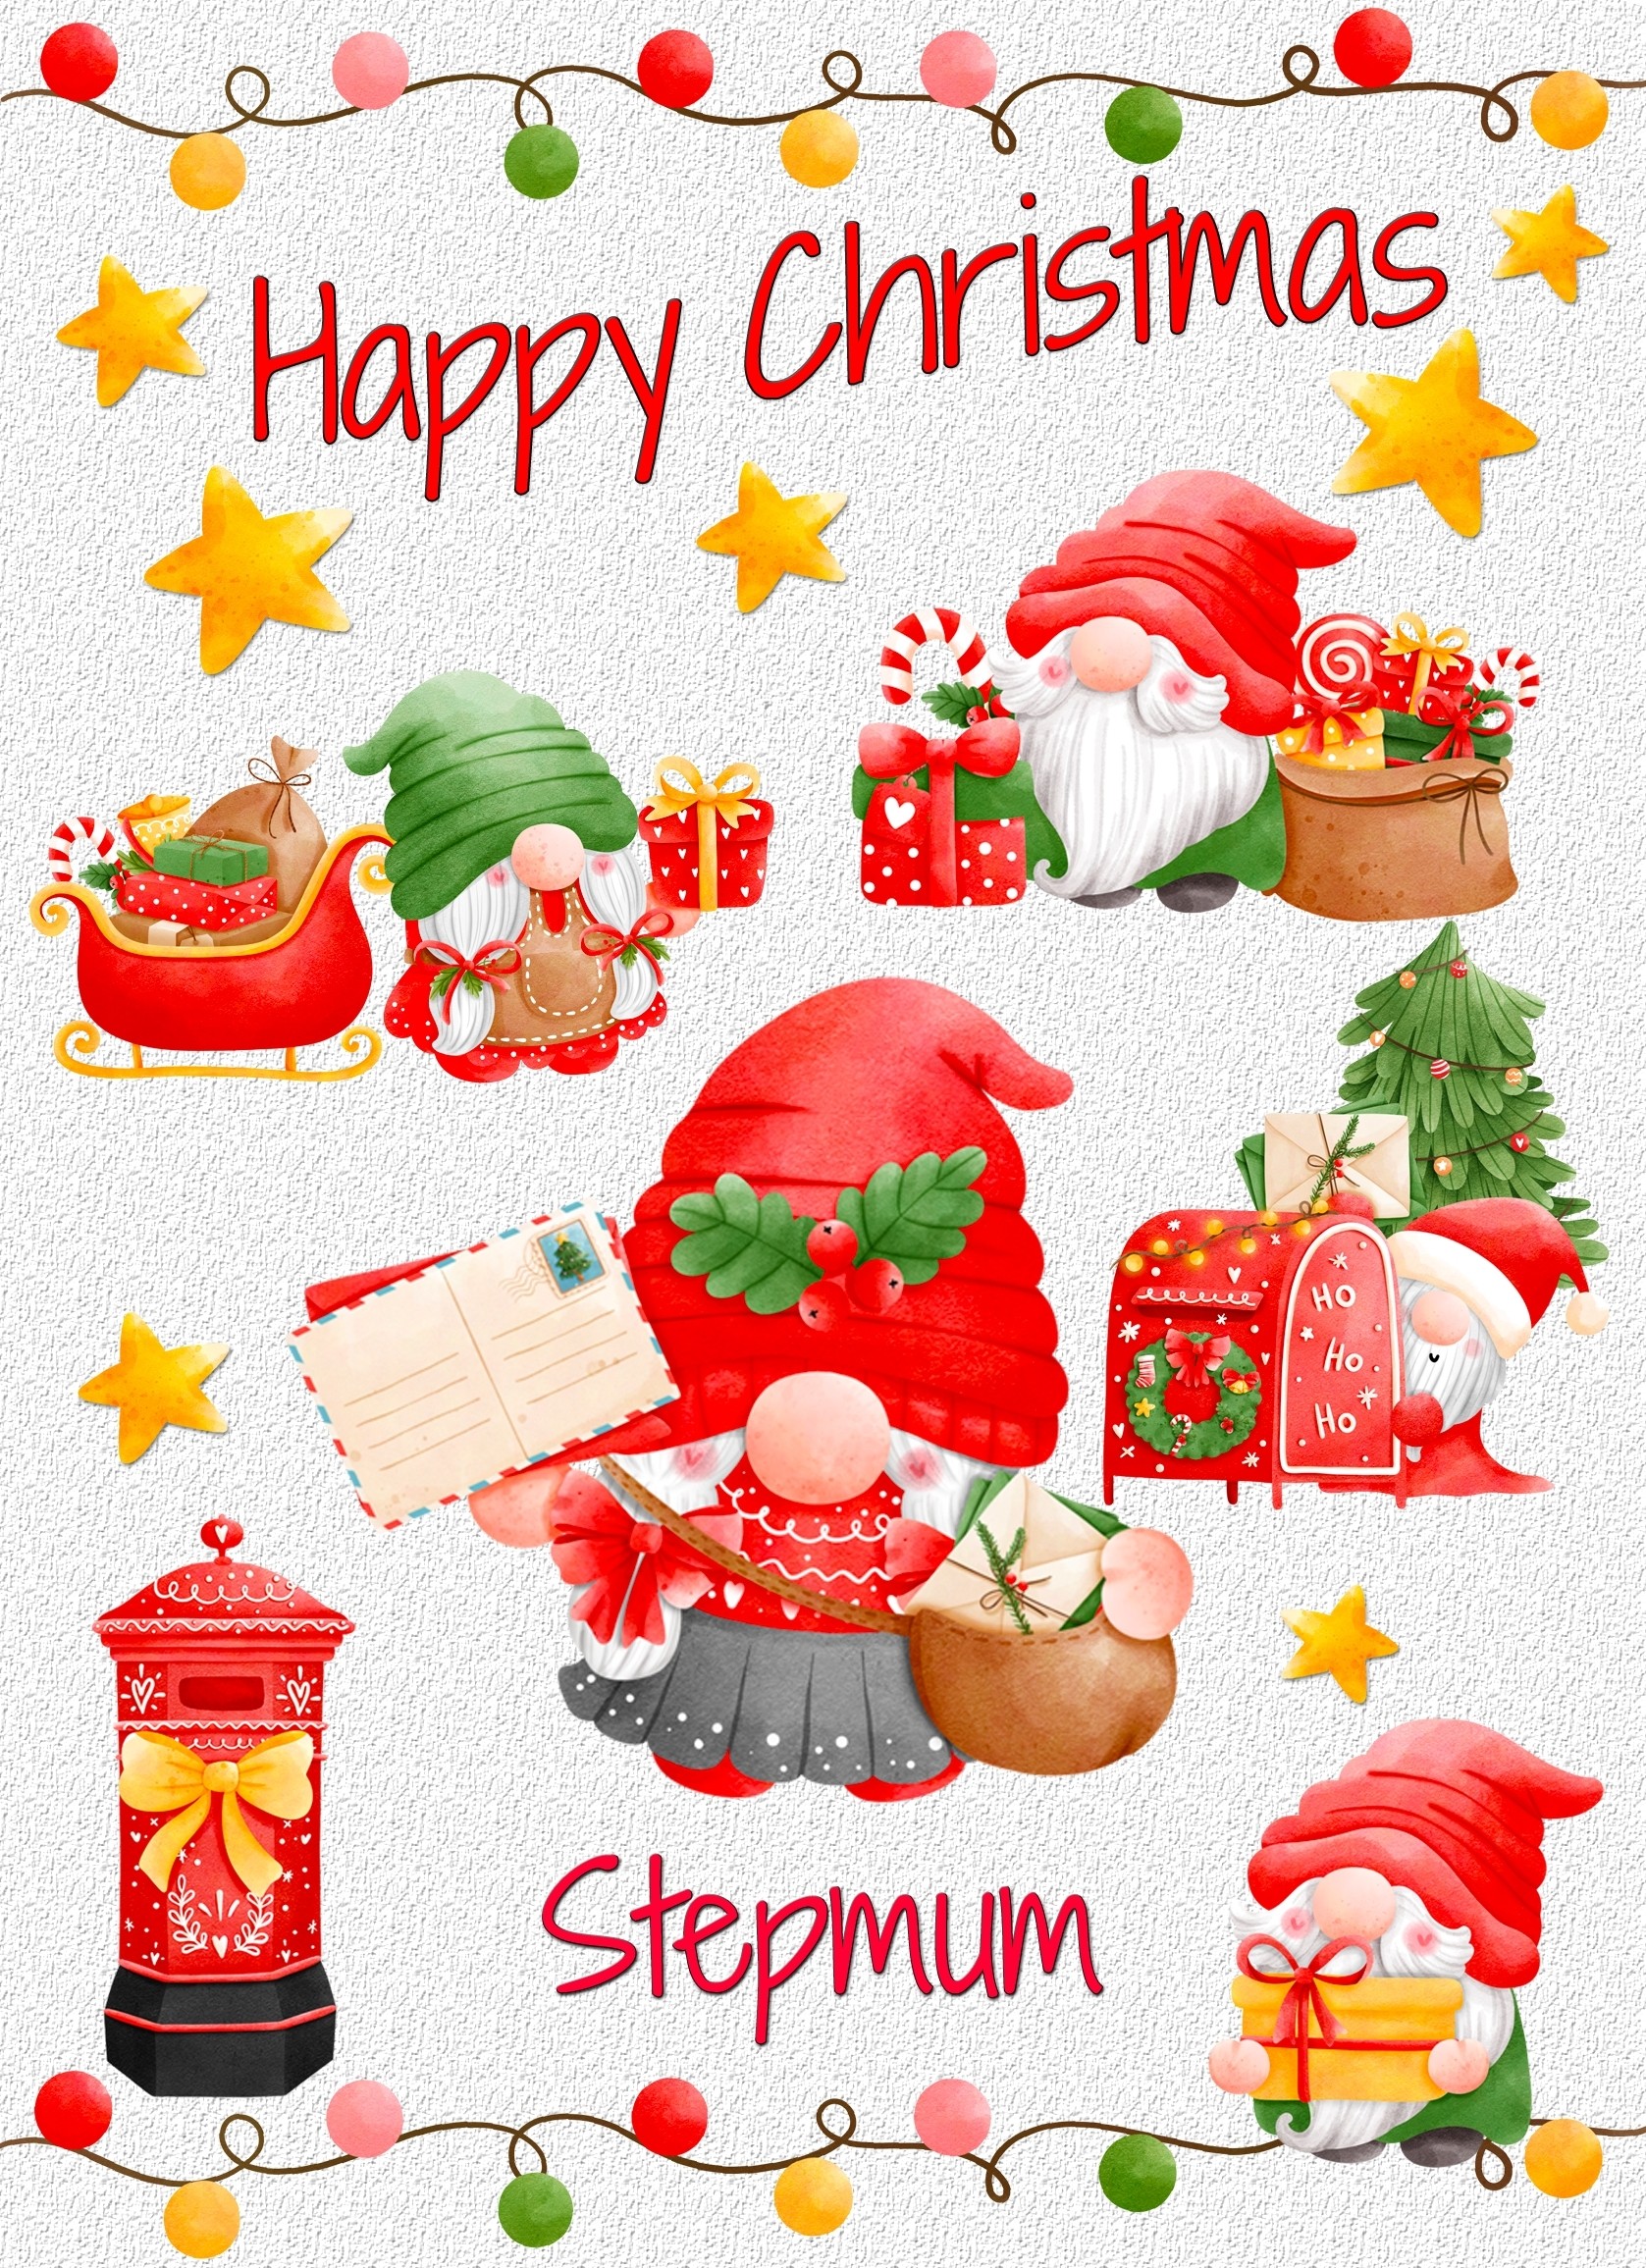 Christmas Card For Stepmum (Gnome, White)